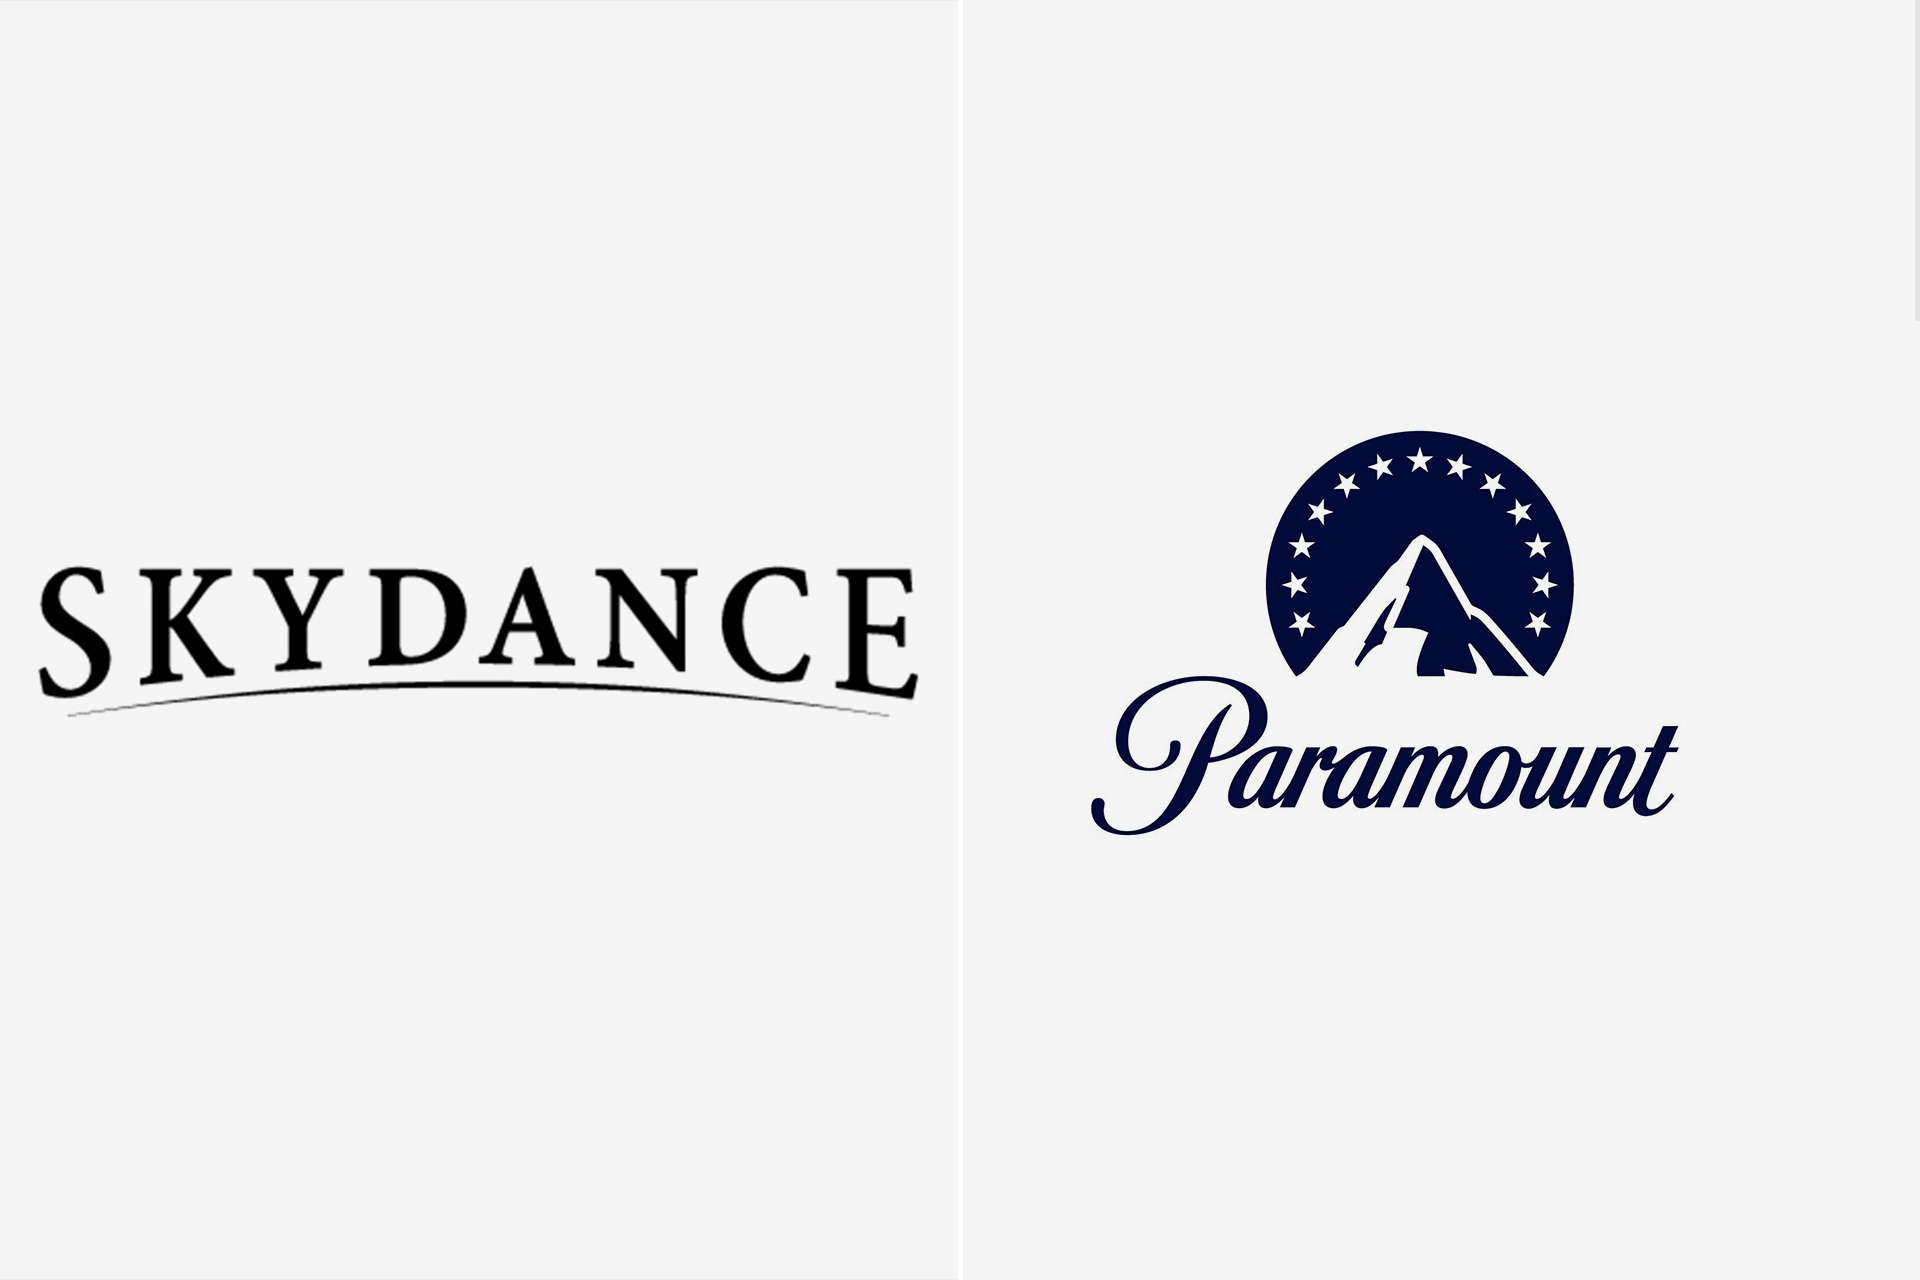 Paramount restructure sa direction, fusion avec Sky Dance en vue